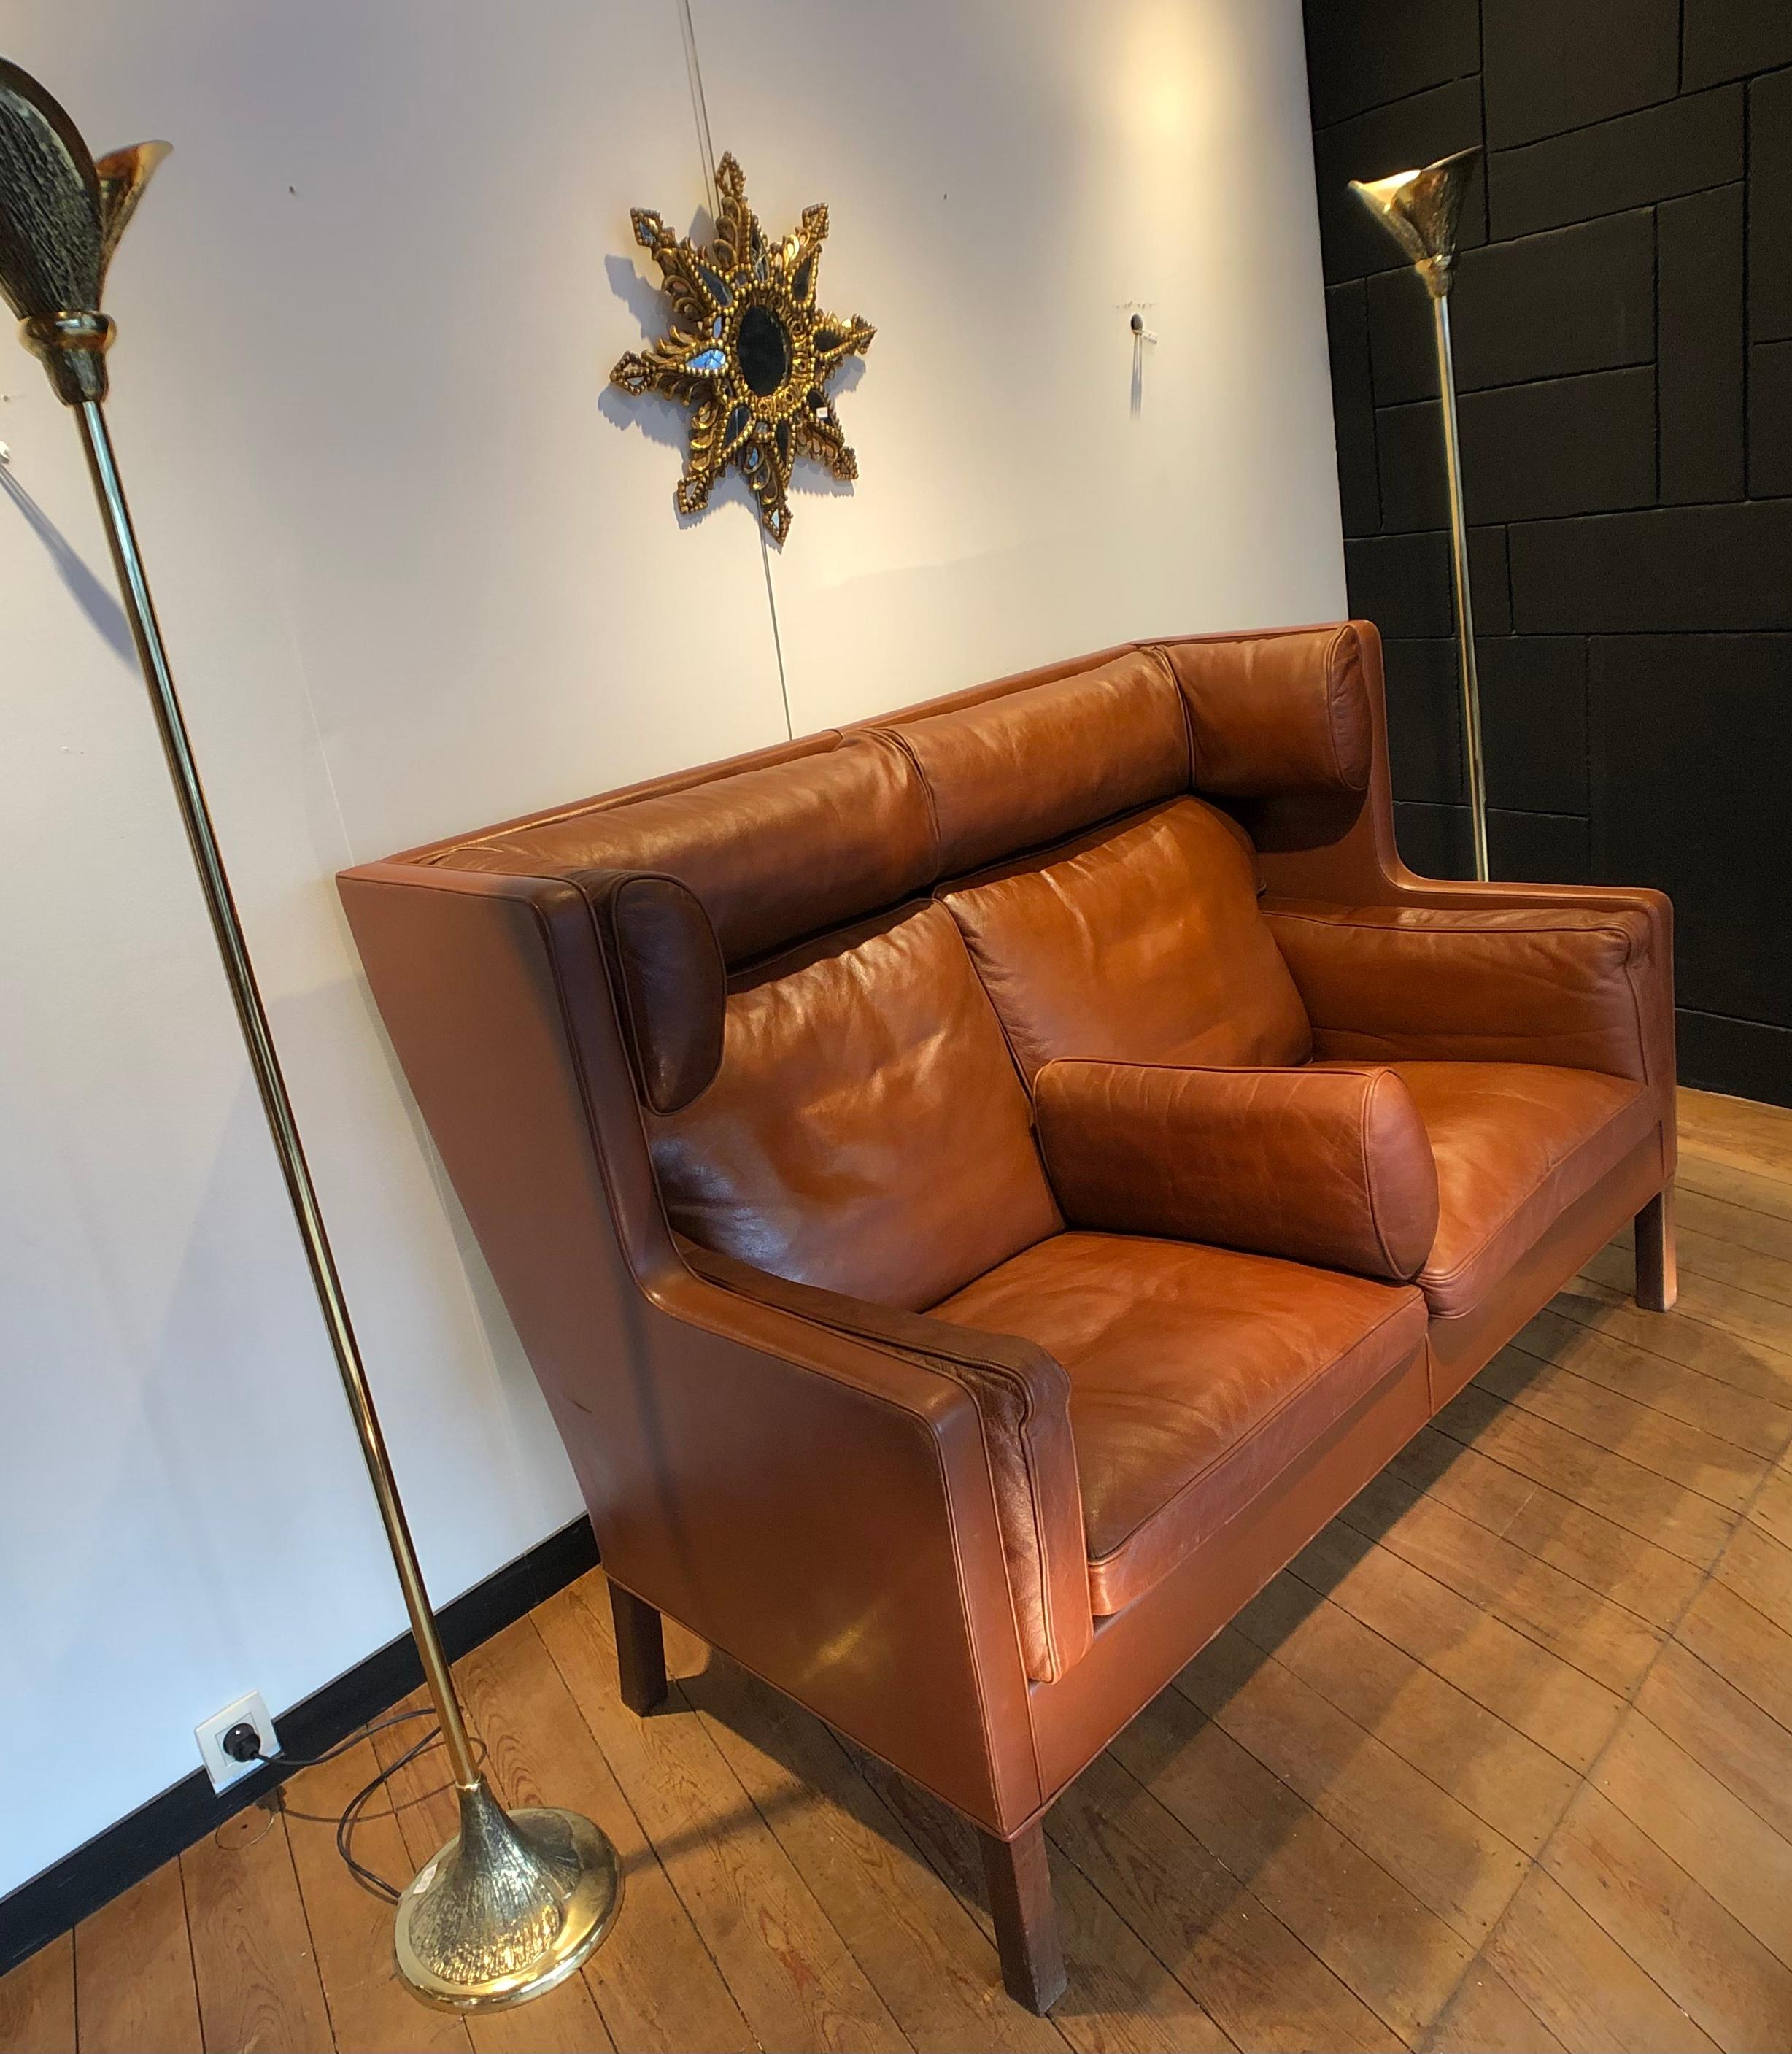 Zweisitziges Coupé-Sofa von Børge Mogensen für fredericia stolen møbelfabrik in cognacfarbenem Leder und Mahagonifüßen.
Dies ist ein altes Modell mit einer schönen Patina auf Leder und in relativ gutem Zustand (ein Kratzer auf der rechten Seite des